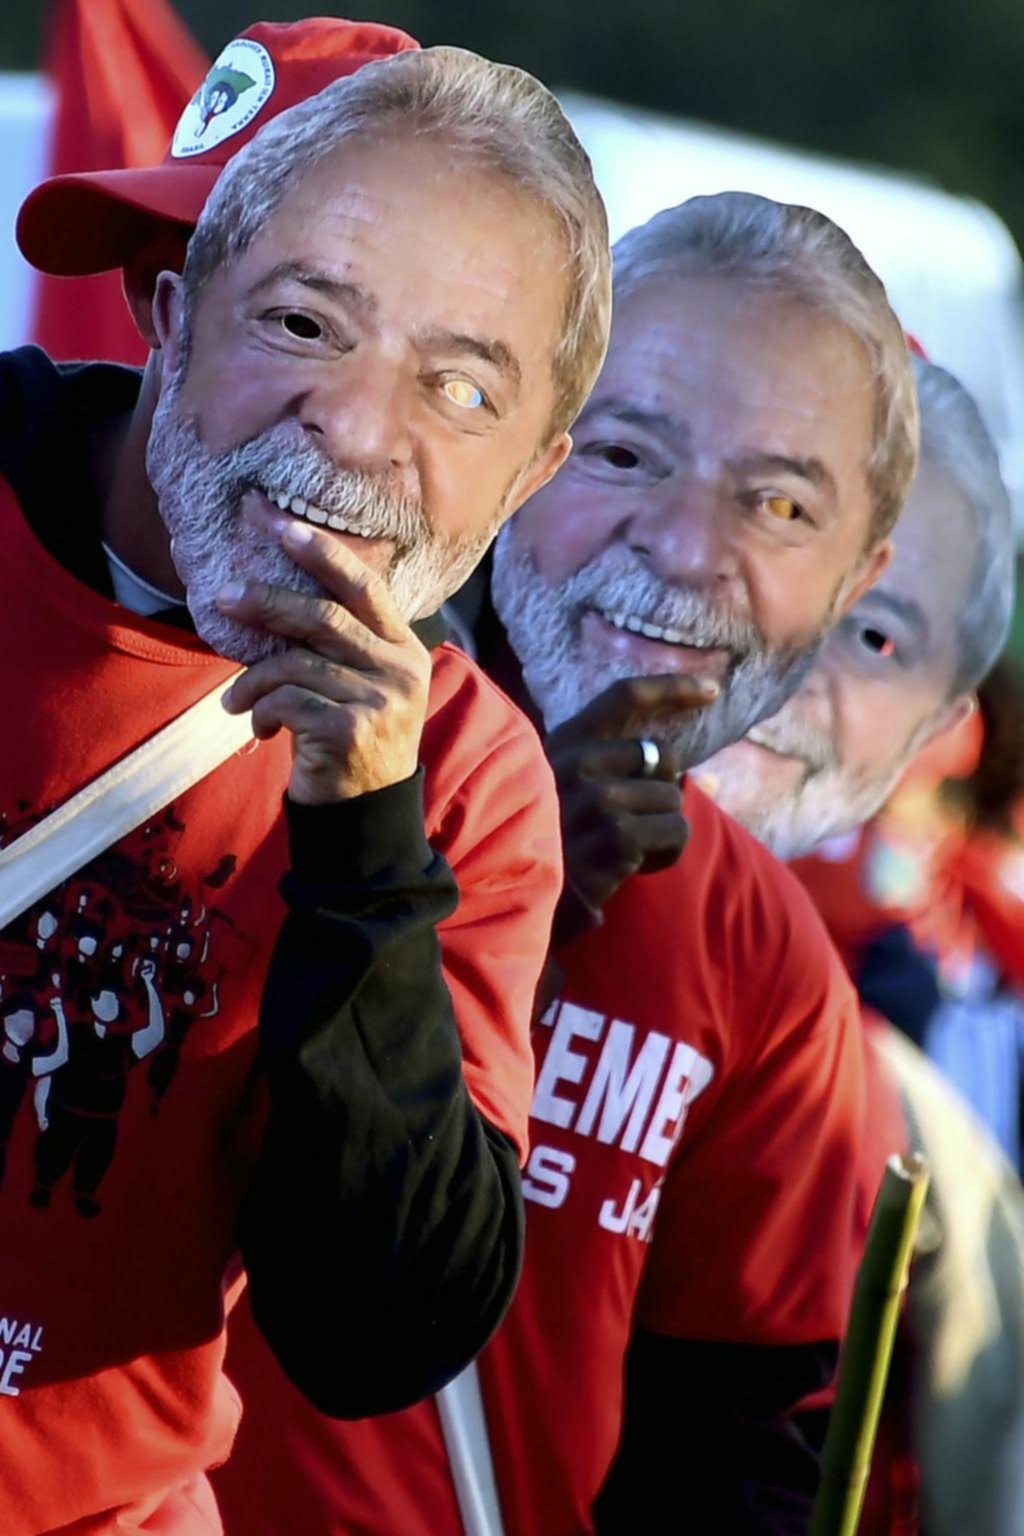 Pese a estar preso, Lula anotó su candidatura presidencial